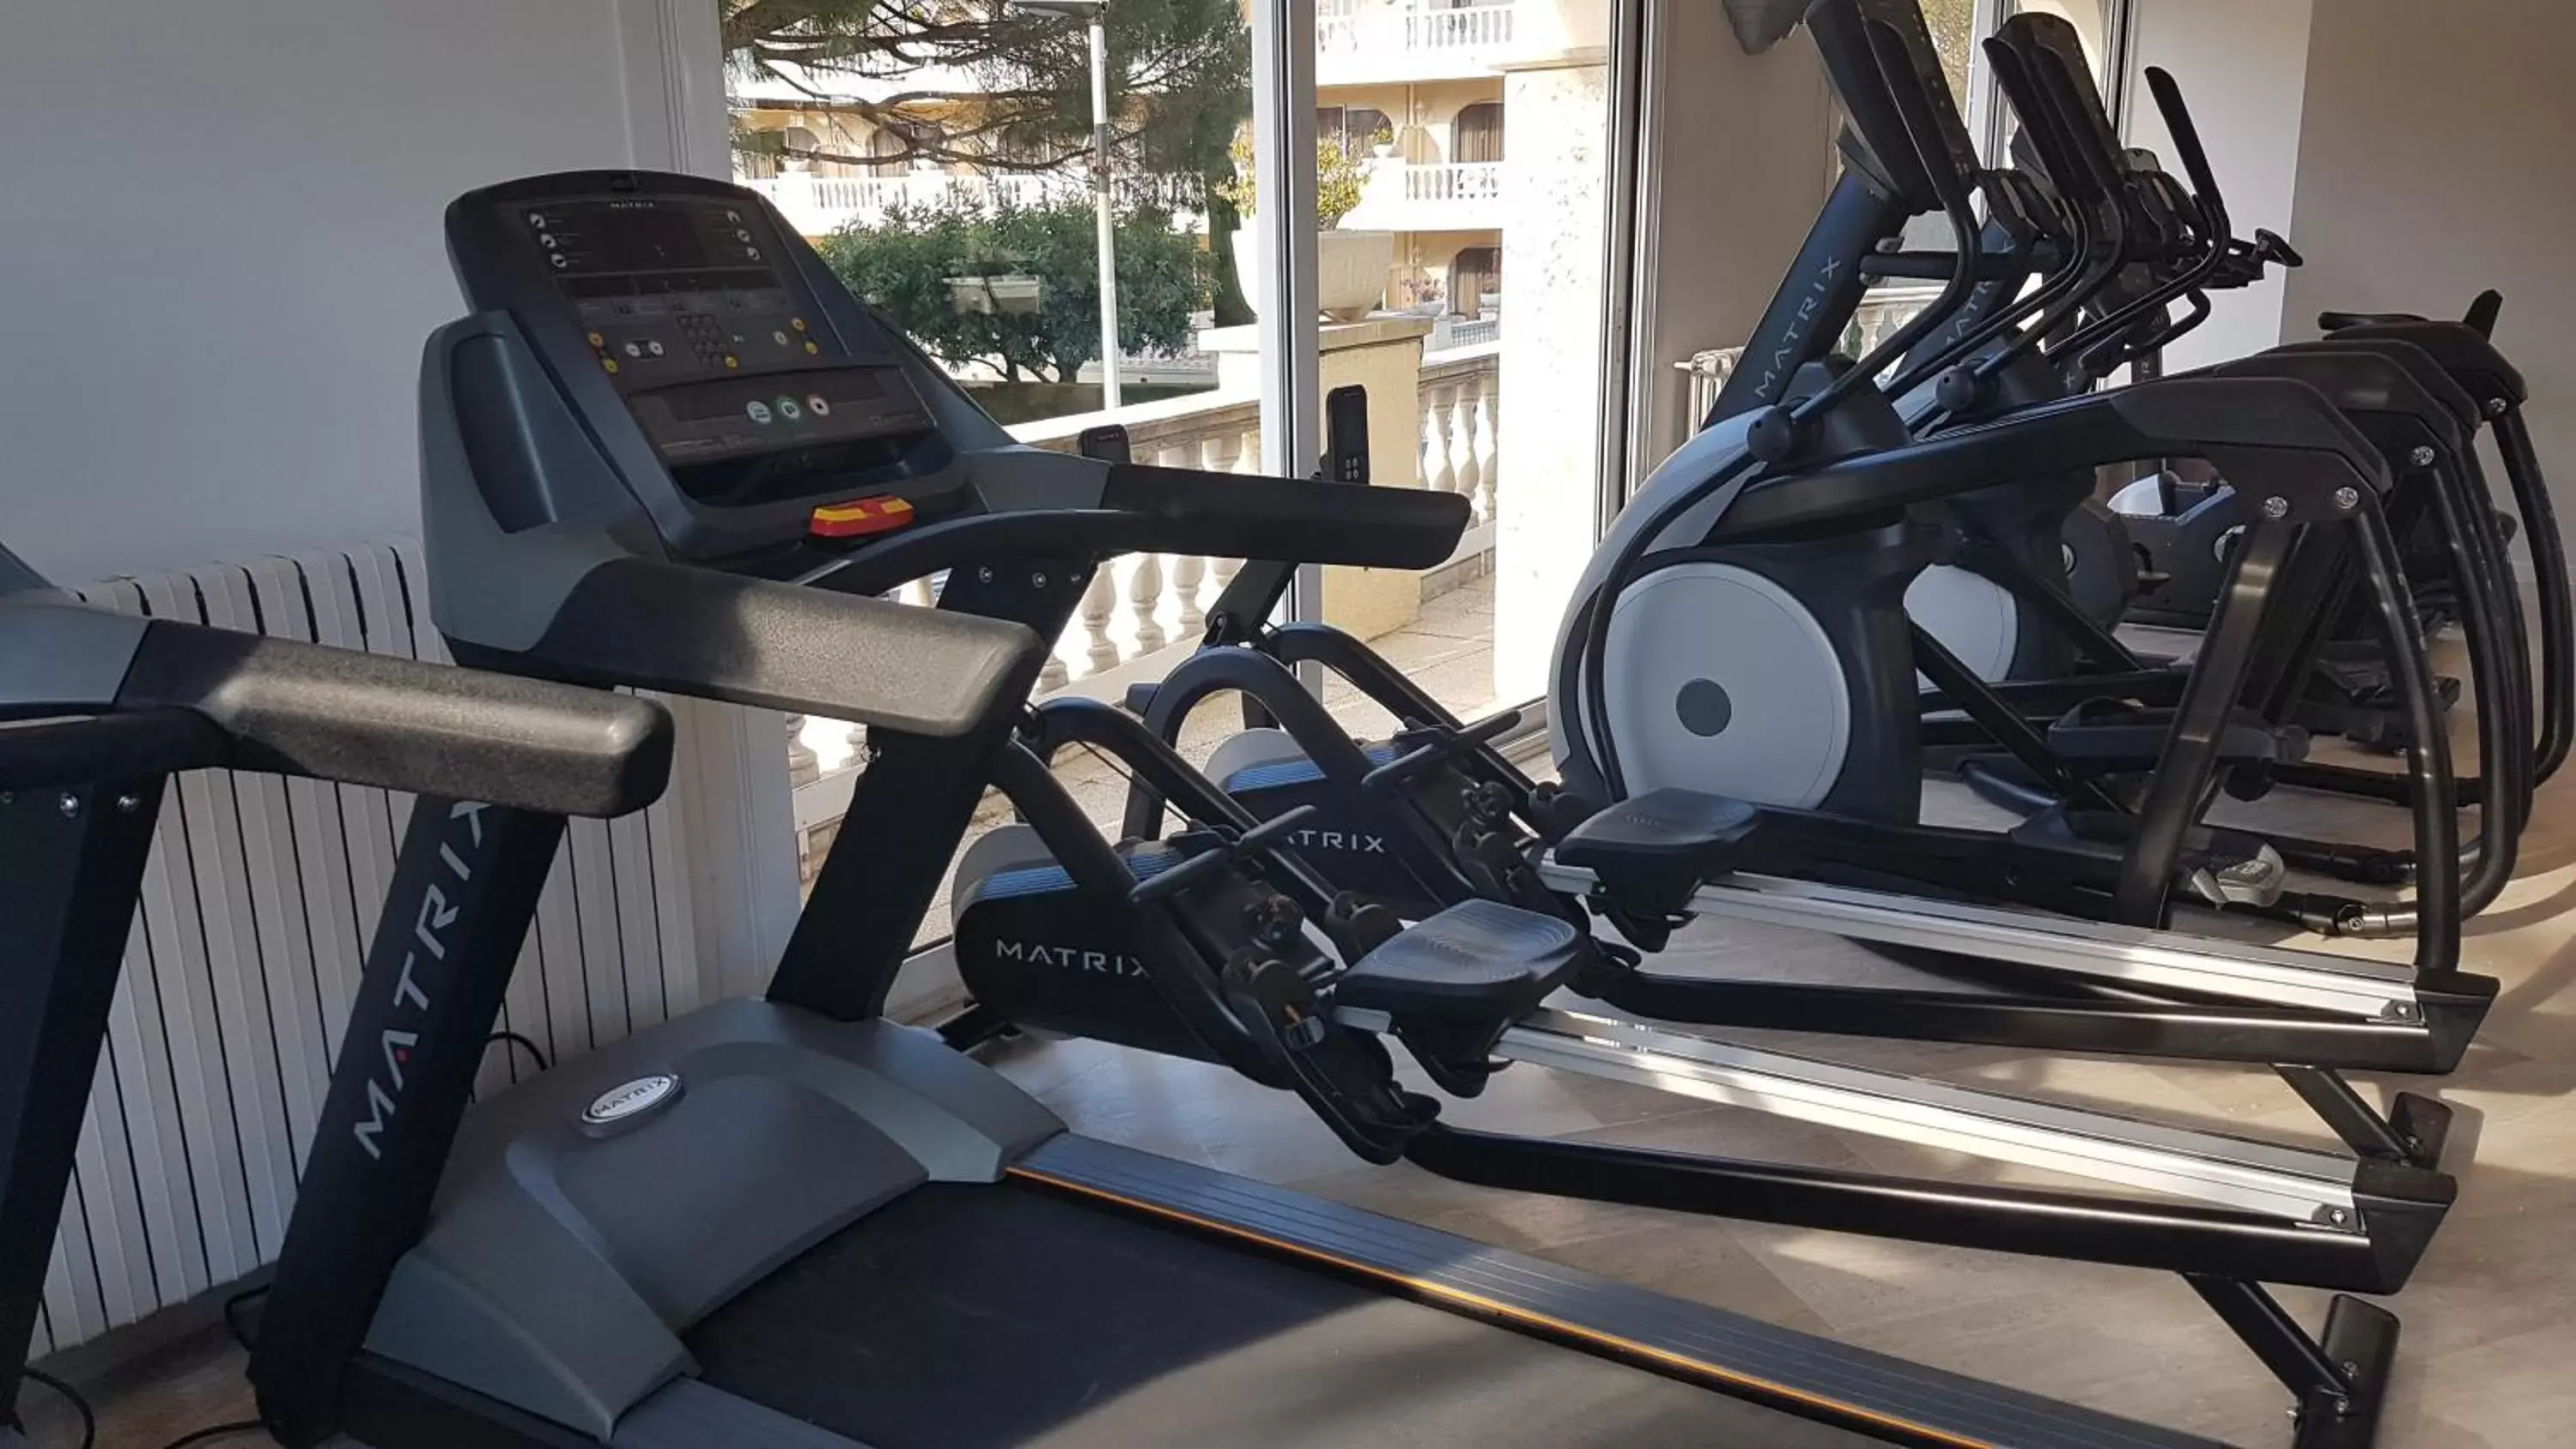 Fitness centre/facilities, Fitness Center/Facilities in Van der Valk Hotel Barcarola